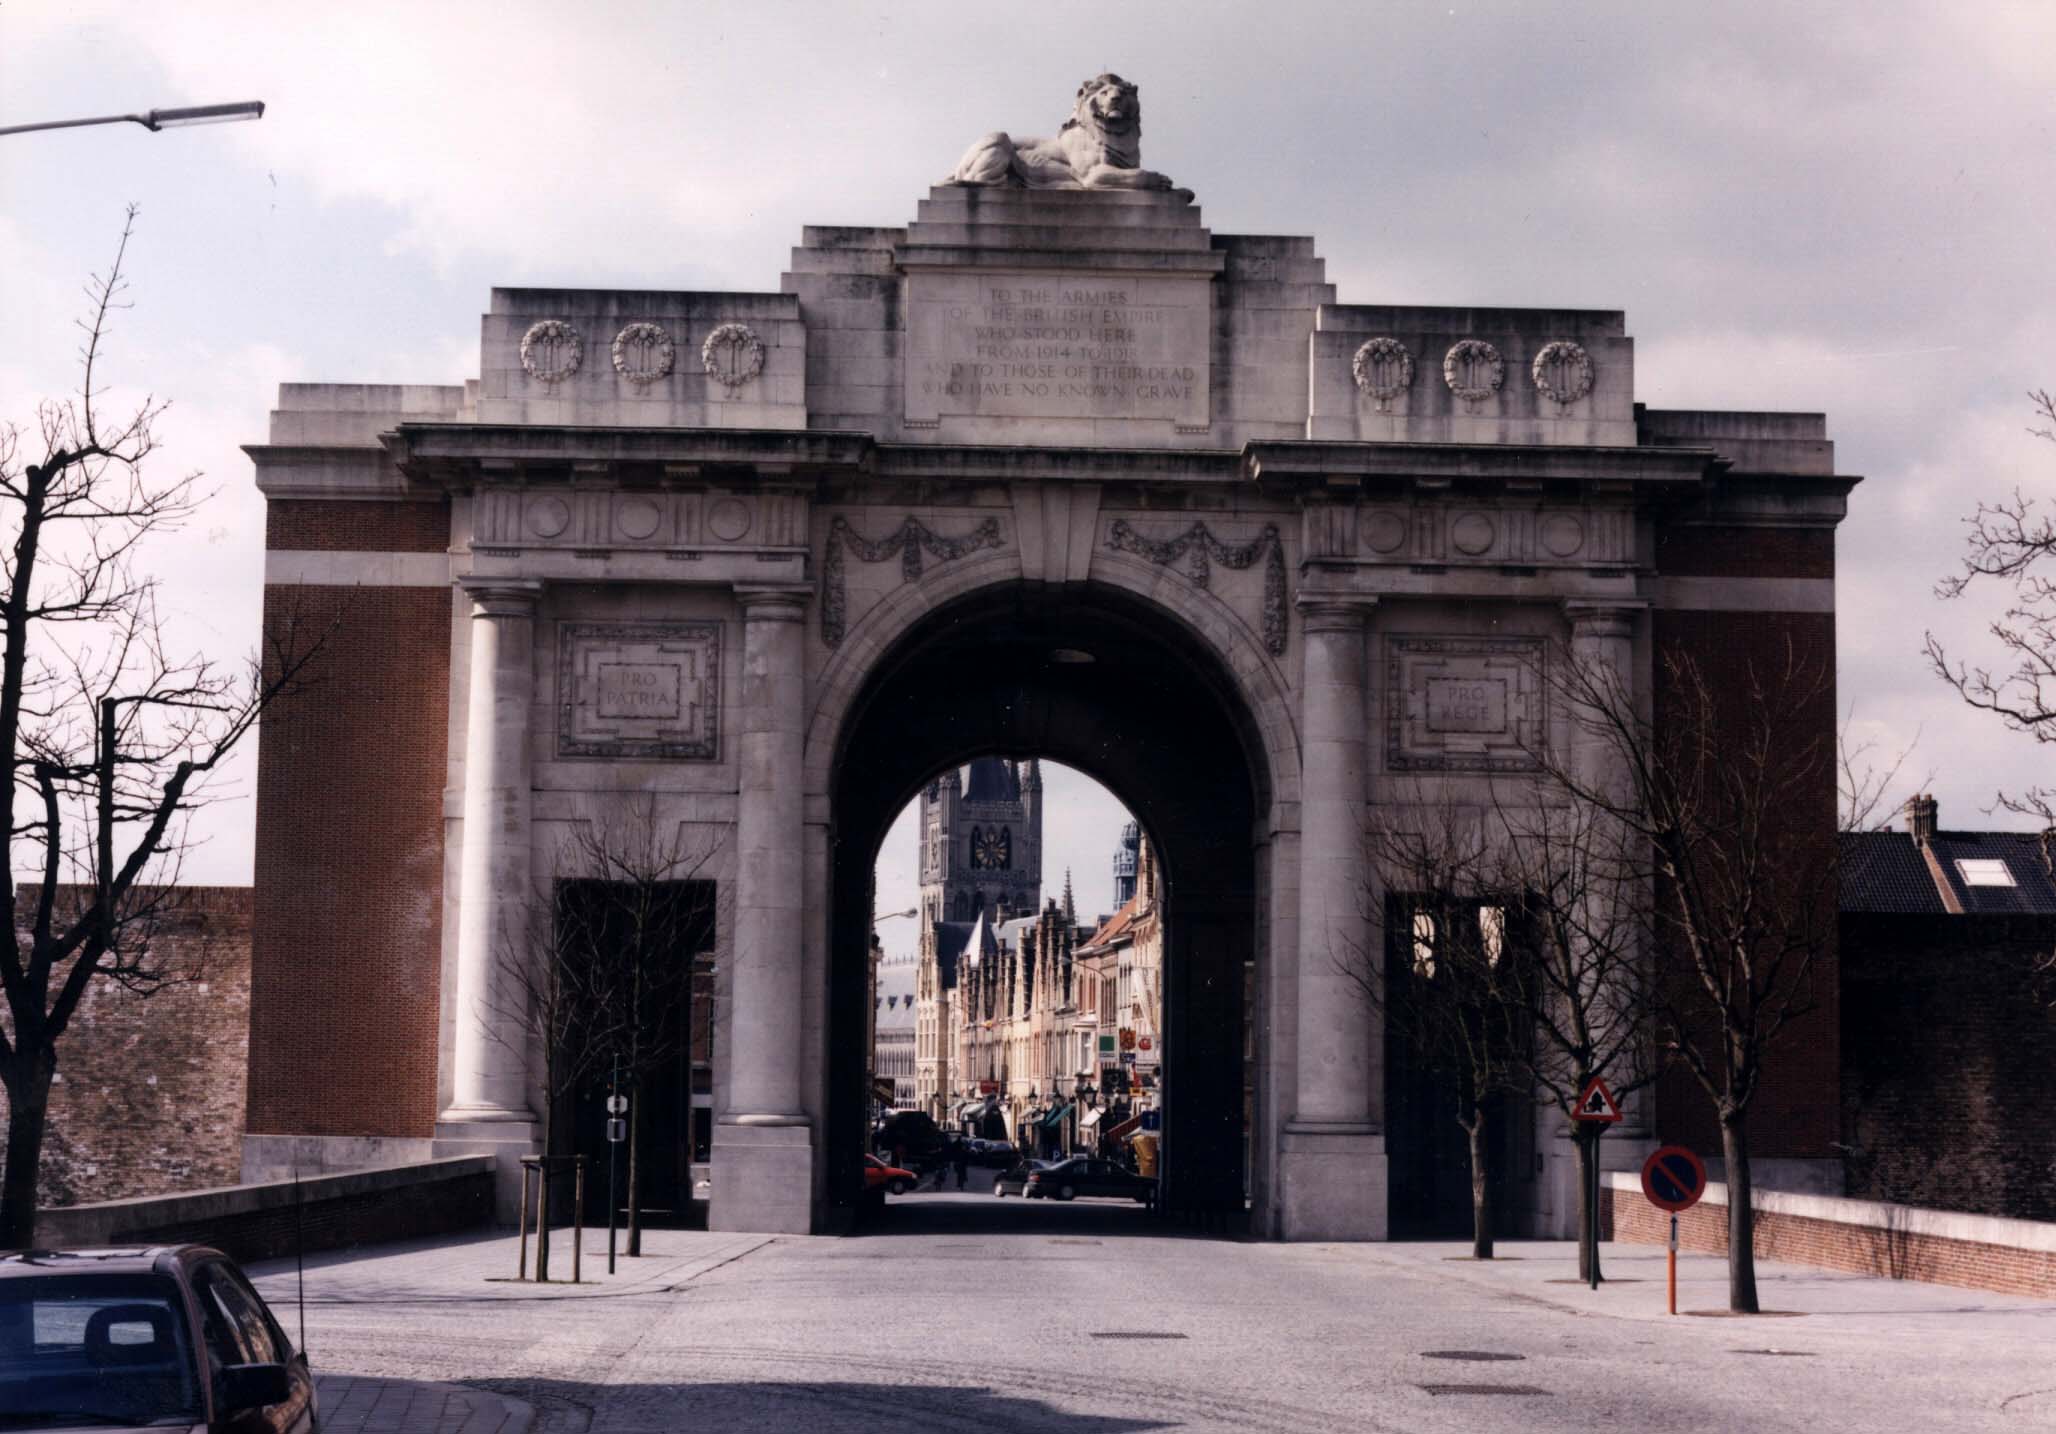 Menin Gate (Ypres) Memorial, Belgium